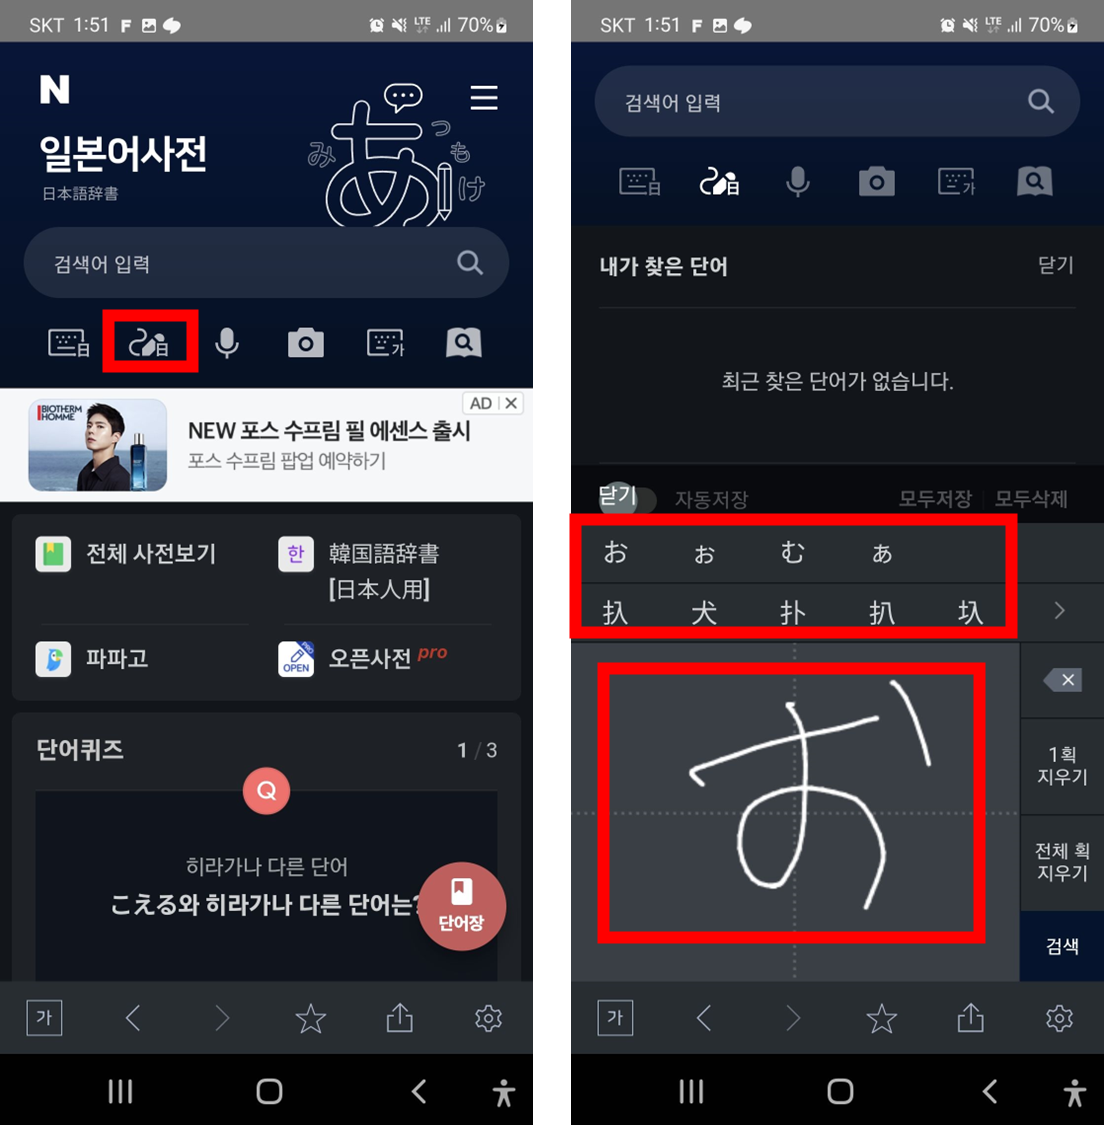 네이버-사전-모바일-앱-일본어-필기-인식기-기능-사용방법